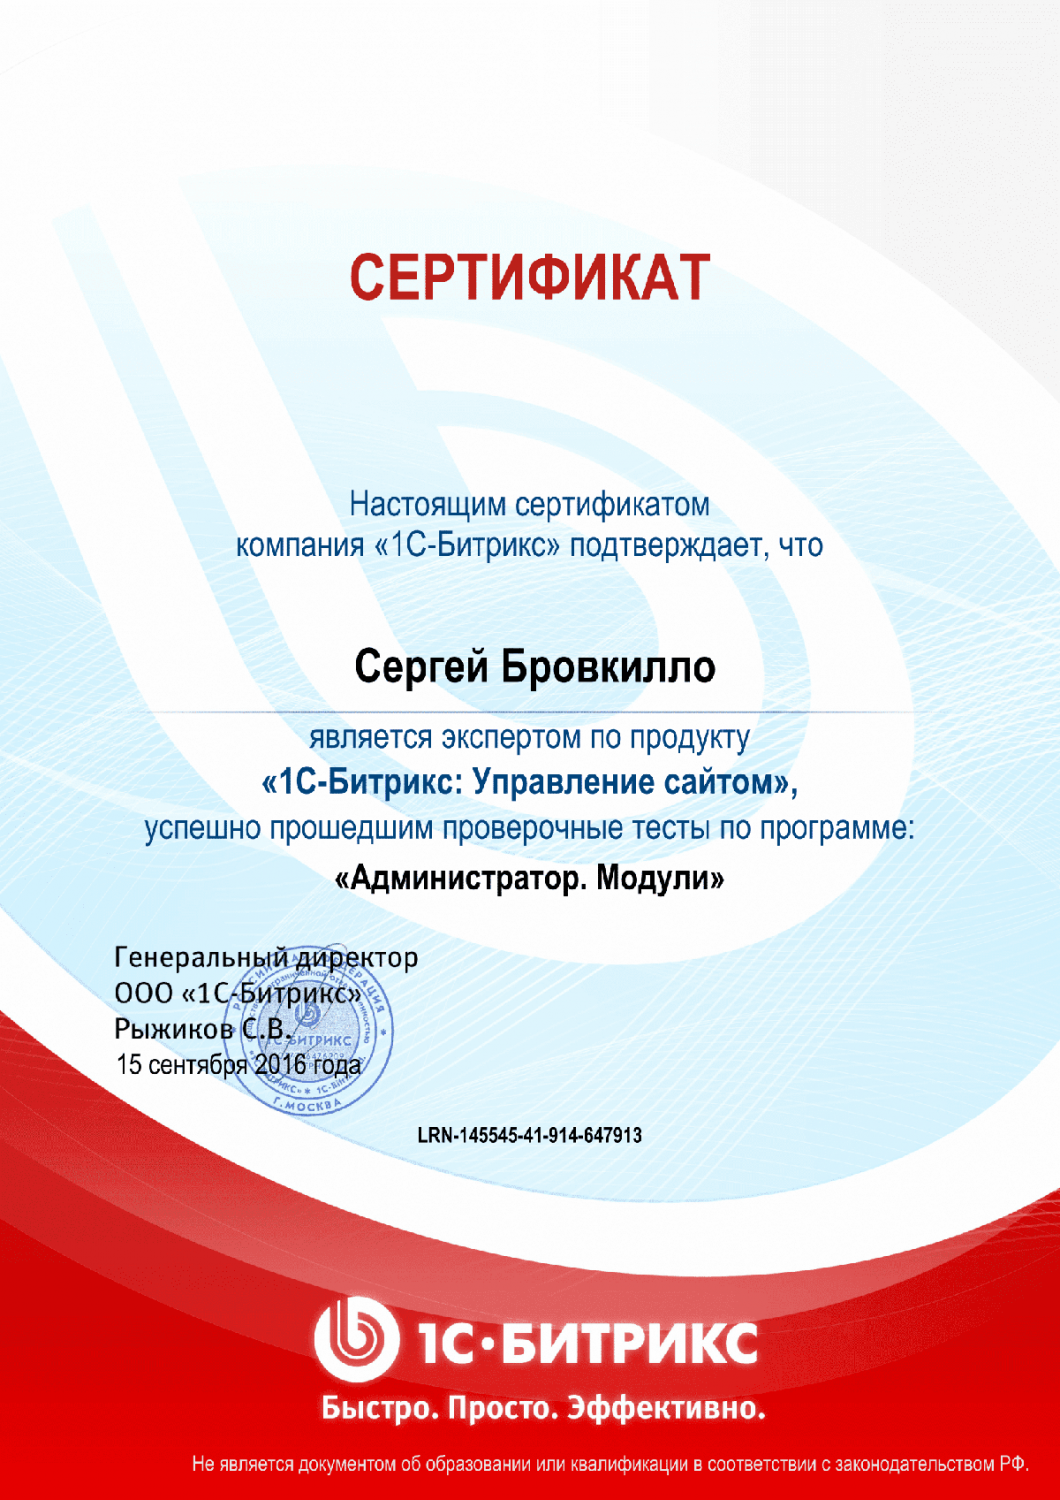 Сертификат эксперта по программе "Администратор. Модули" в Рязани